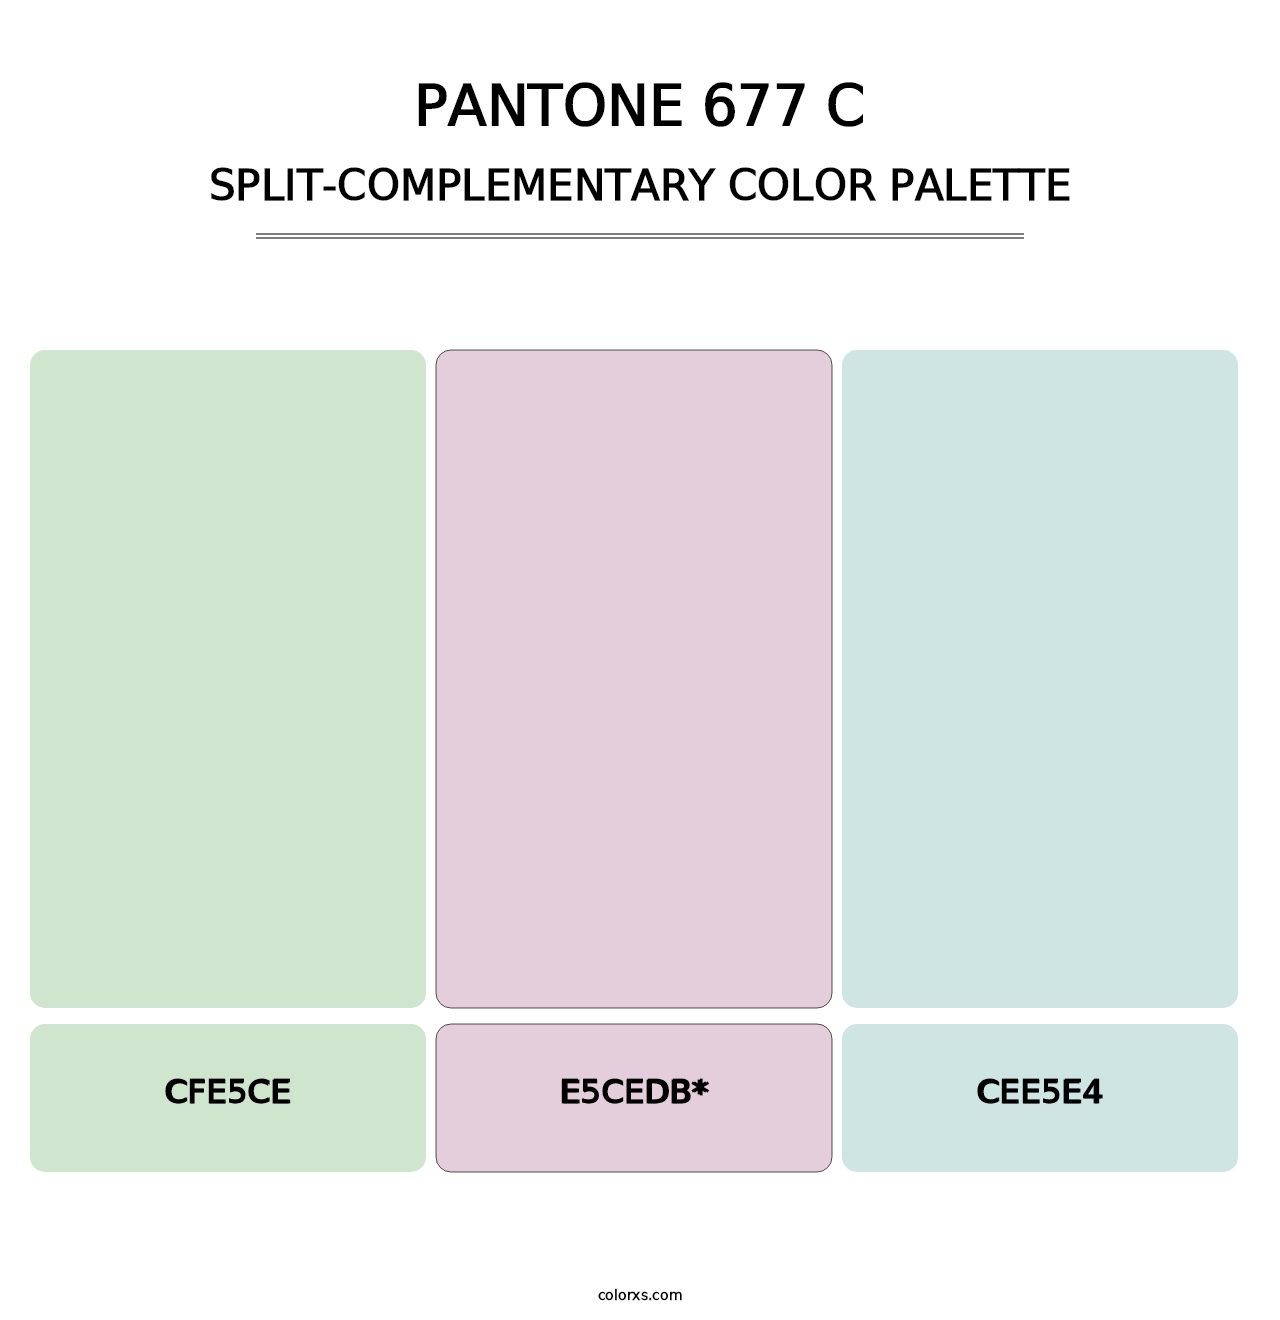 PANTONE 677 C - Split-Complementary Color Palette